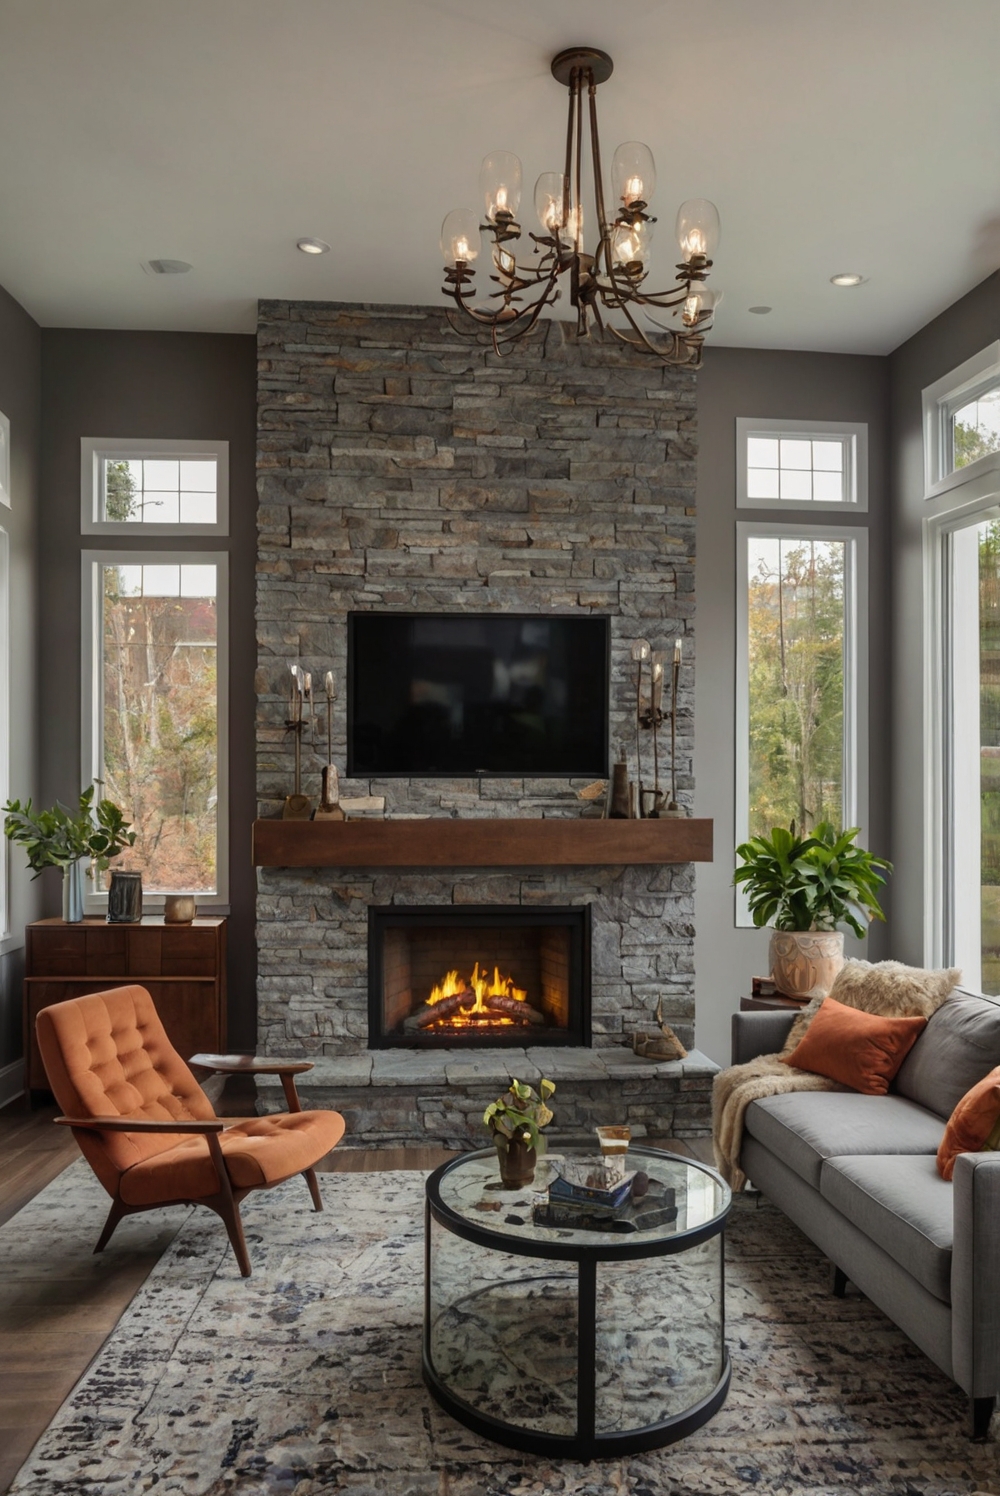 designer living room, modern fireplace design, contemporary interior design, fireplace interior design, living room decor, fireplace decorating ideas, interior fireplace design